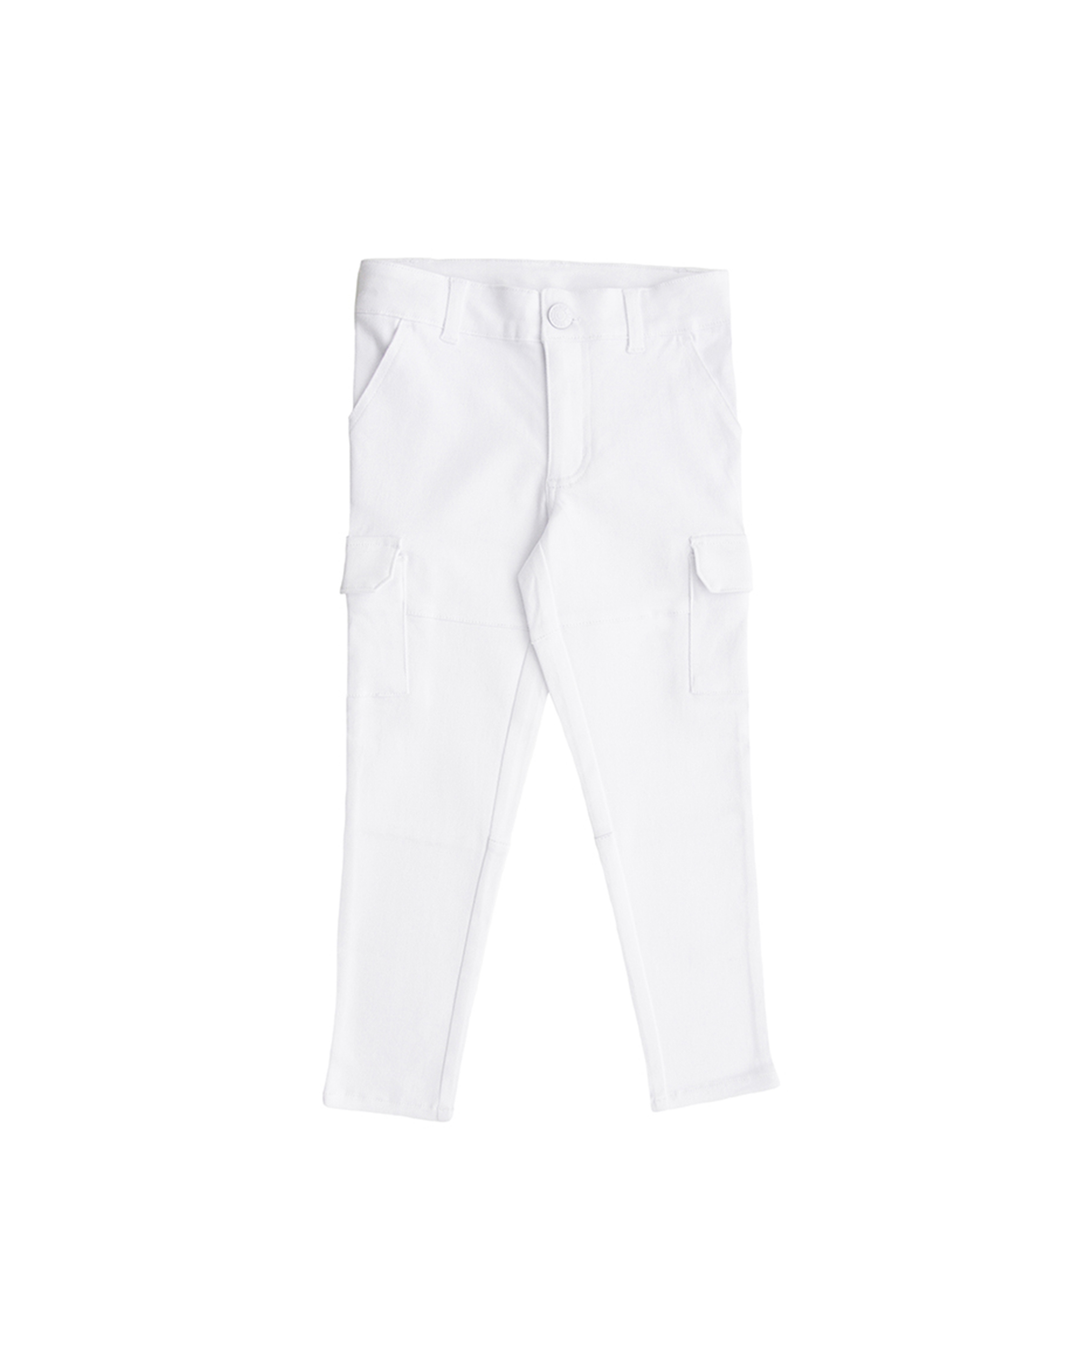 Pantalón blanco con bolsillos